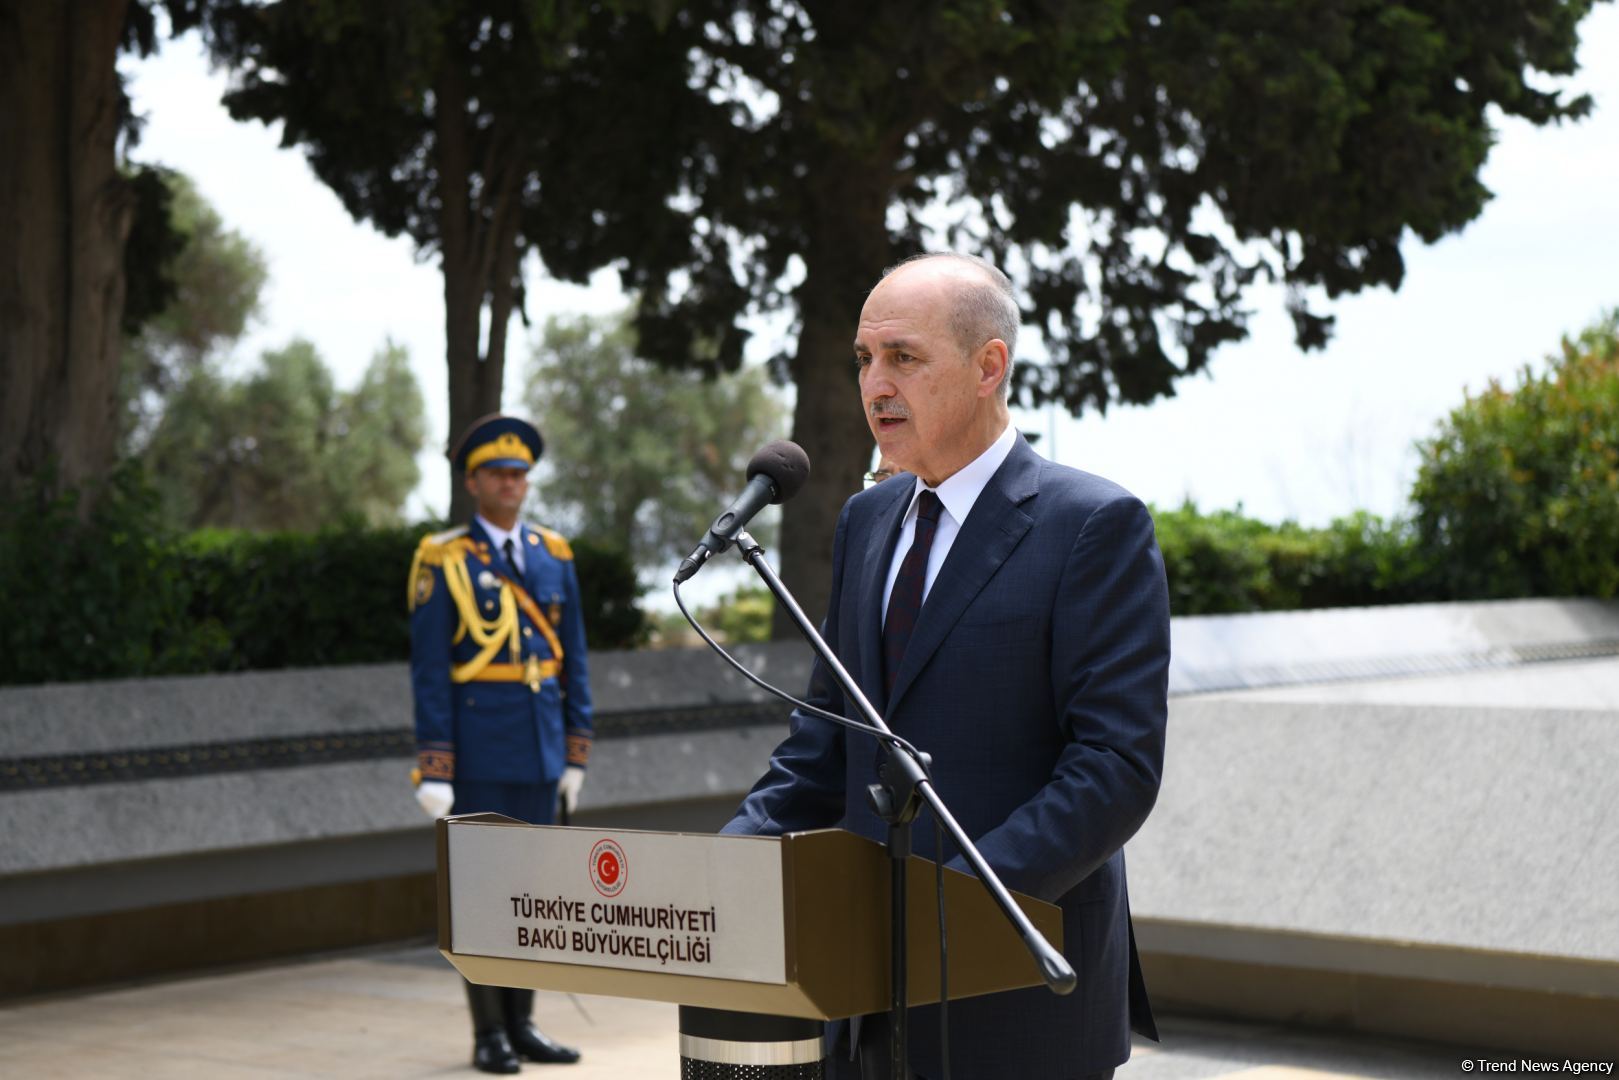 Нуман Куртулмуш посетил Аллею почетного захоронения, Аллею шехидов и памятник турецким воинам в Азербайджане (ФОТО)